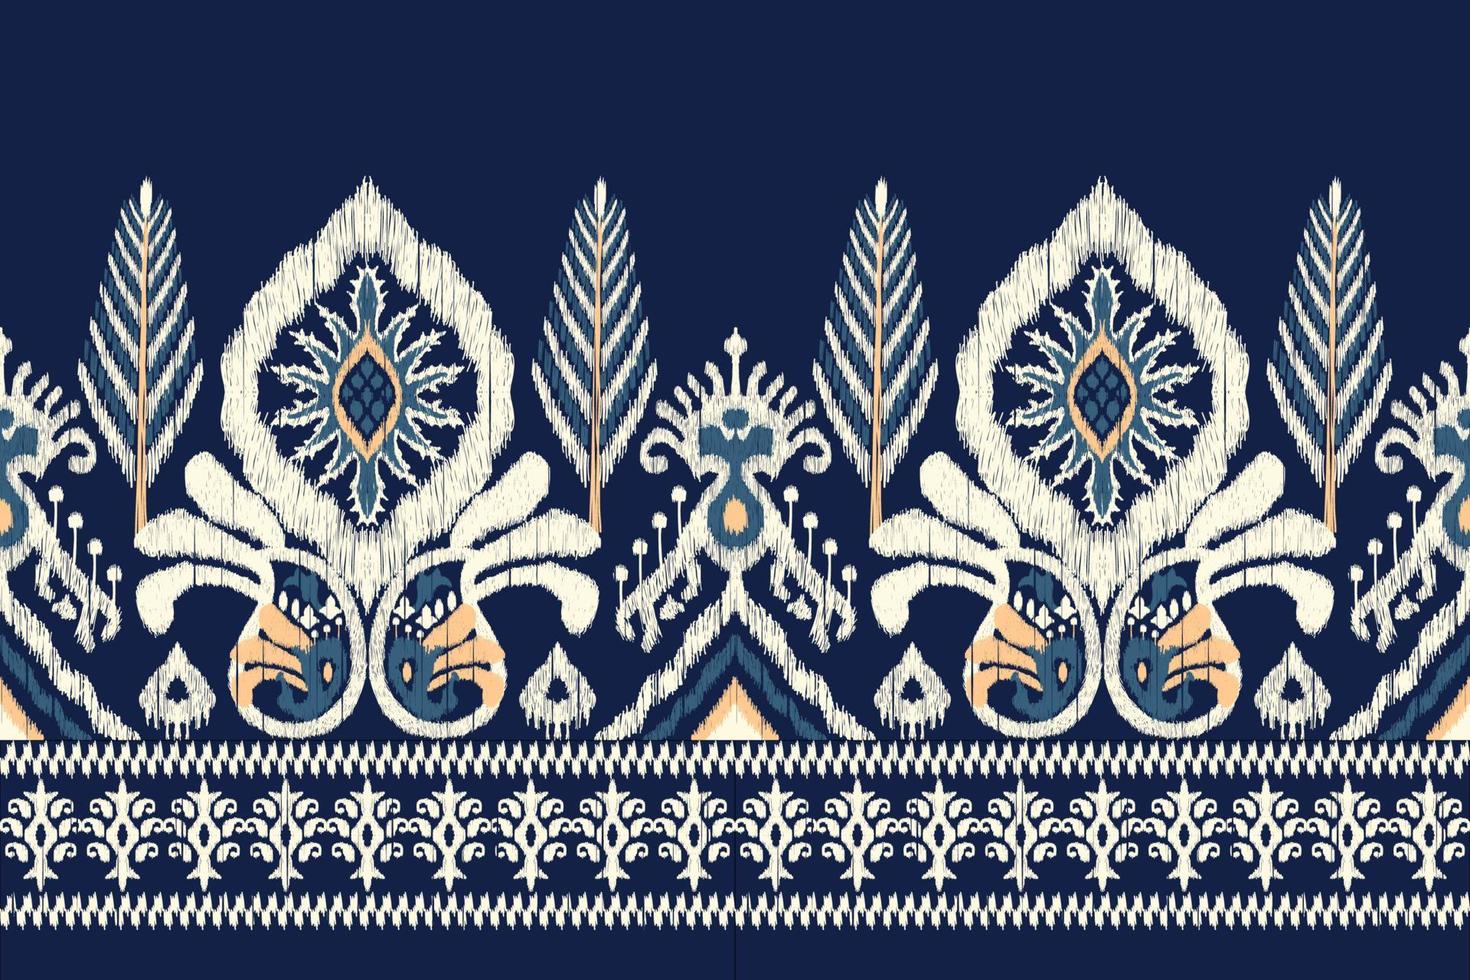 bordado floral ikat paisley sobre fondo azul marino.patrón oriental étnico geométrico tradicional.ilustración vectorial abstracta de estilo azteca.diseño para textura,tela,ropa,envoltura,bufanda,sarong. vector